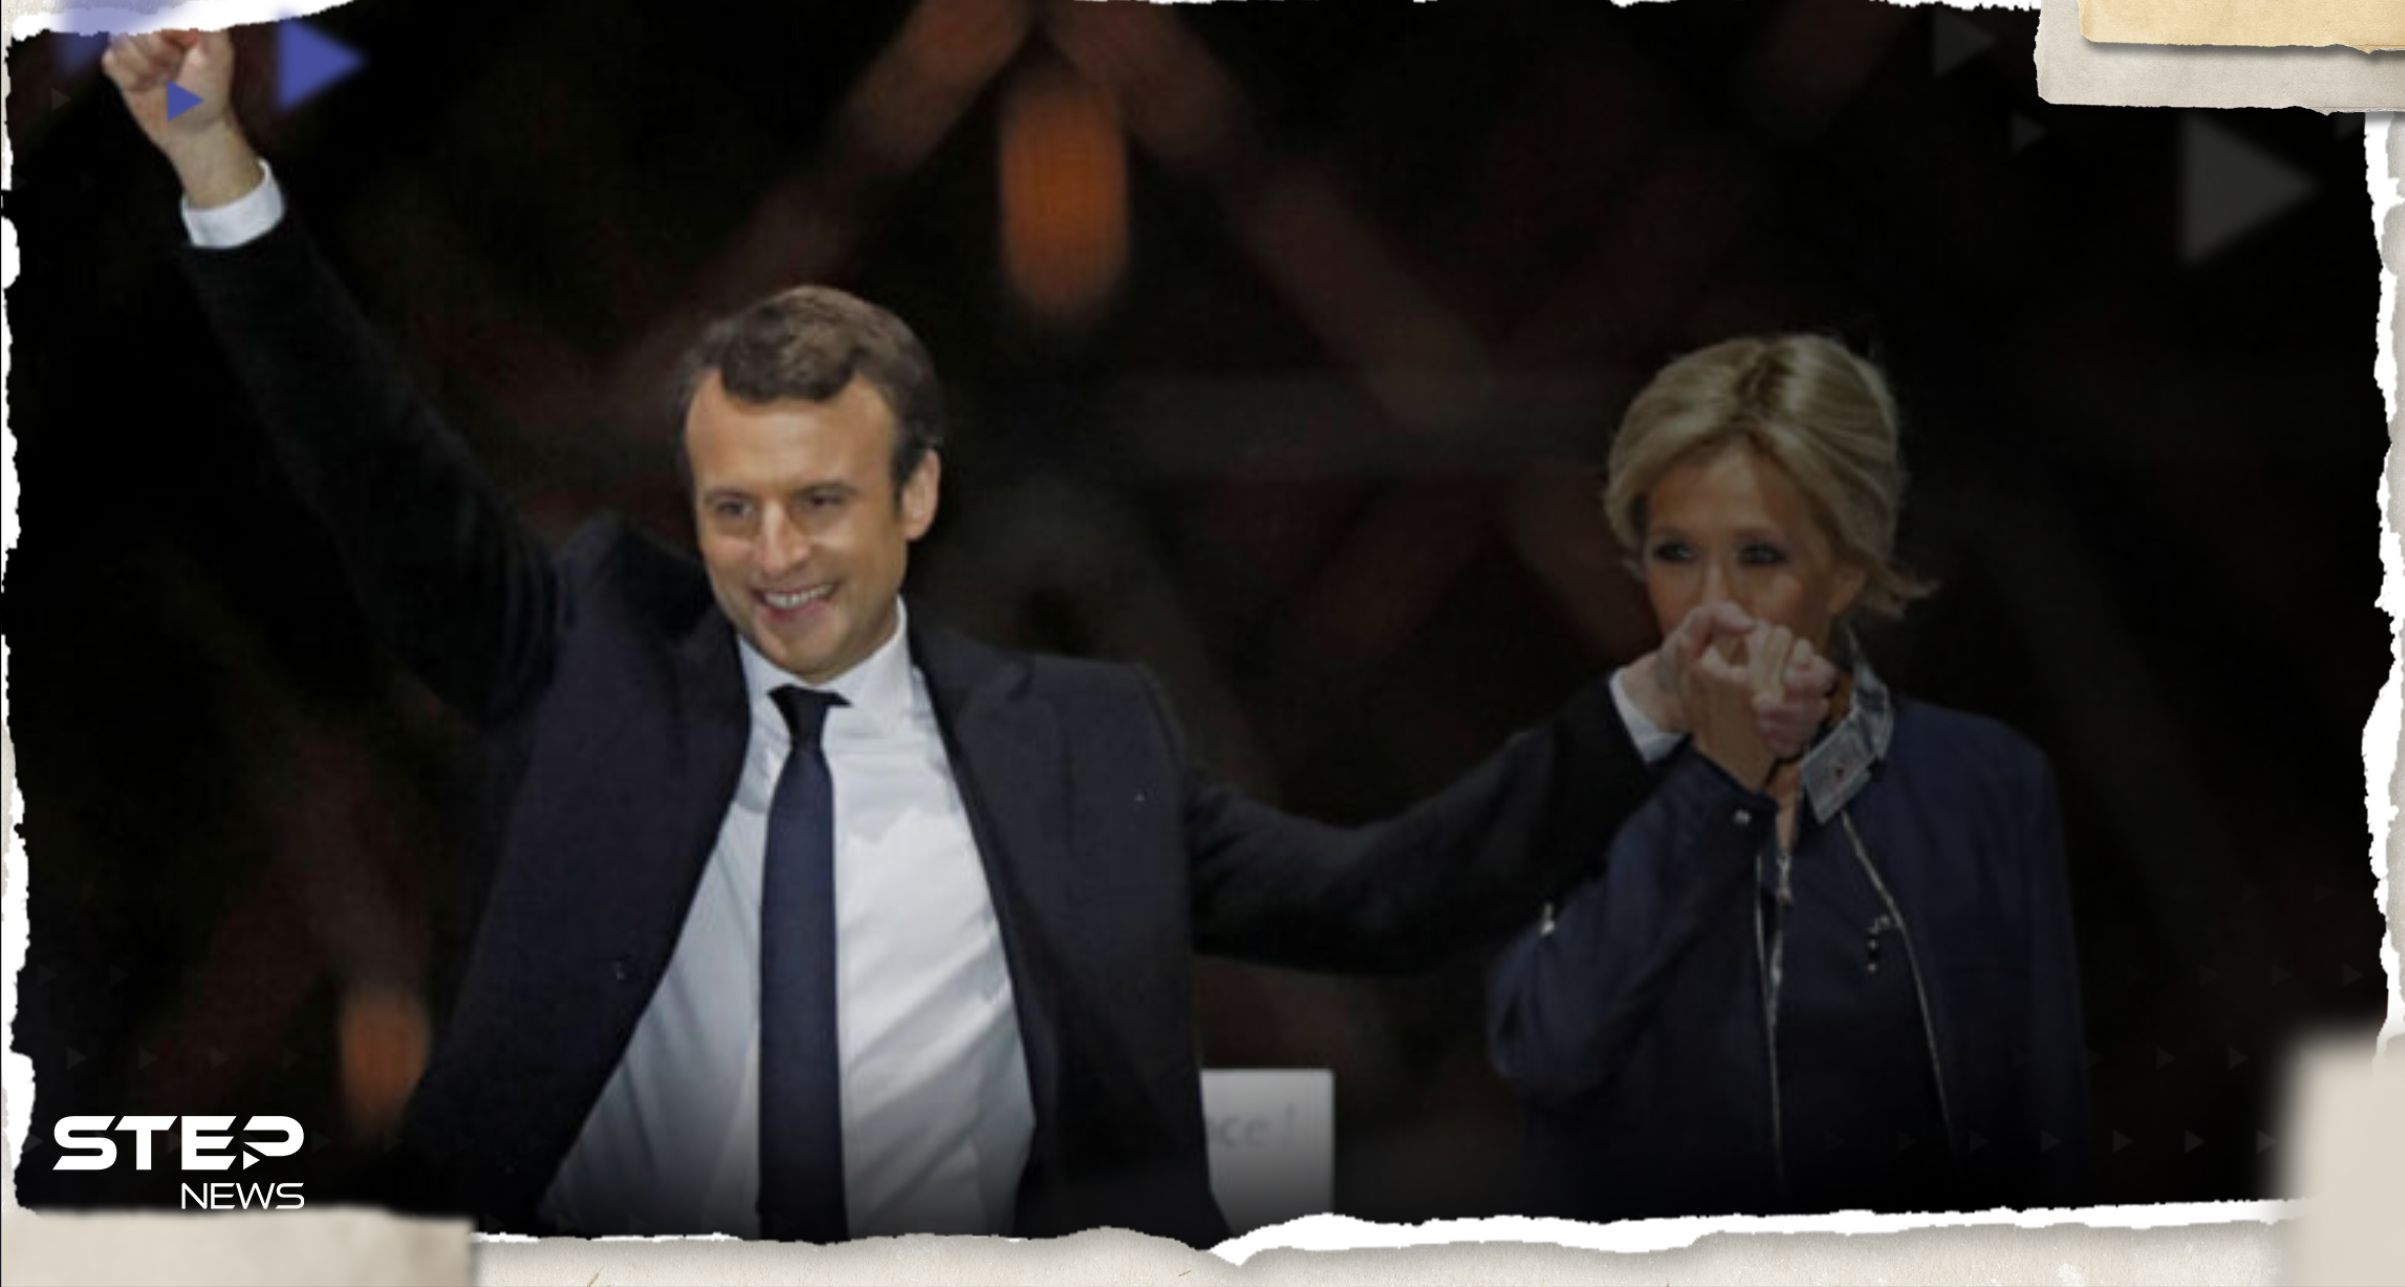 شاهد|| "فرنسا تحترق".. وفيديو لماكرون وزوجته يحضران حفلة في باريس يثير غضبا واسعا